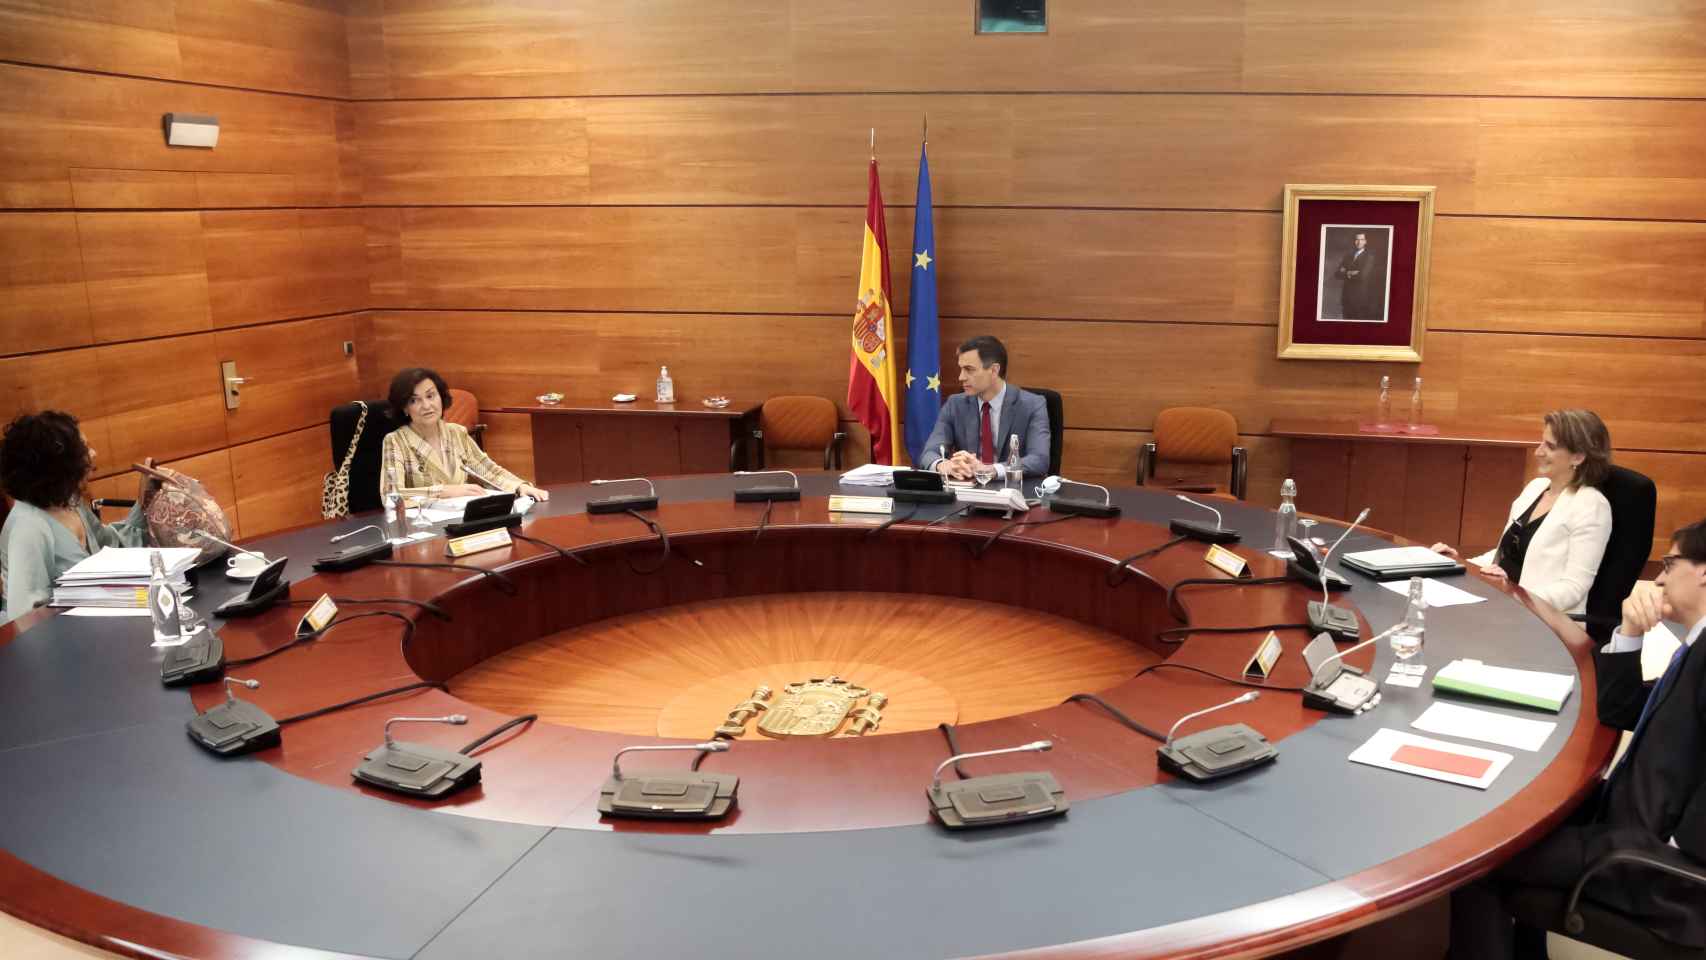 La portavoz María Jesús Montero, las vicepresidentas Calvo y Ribera, el ministro Illa y el presidente Sánchez, en el Consejo de Ministros.